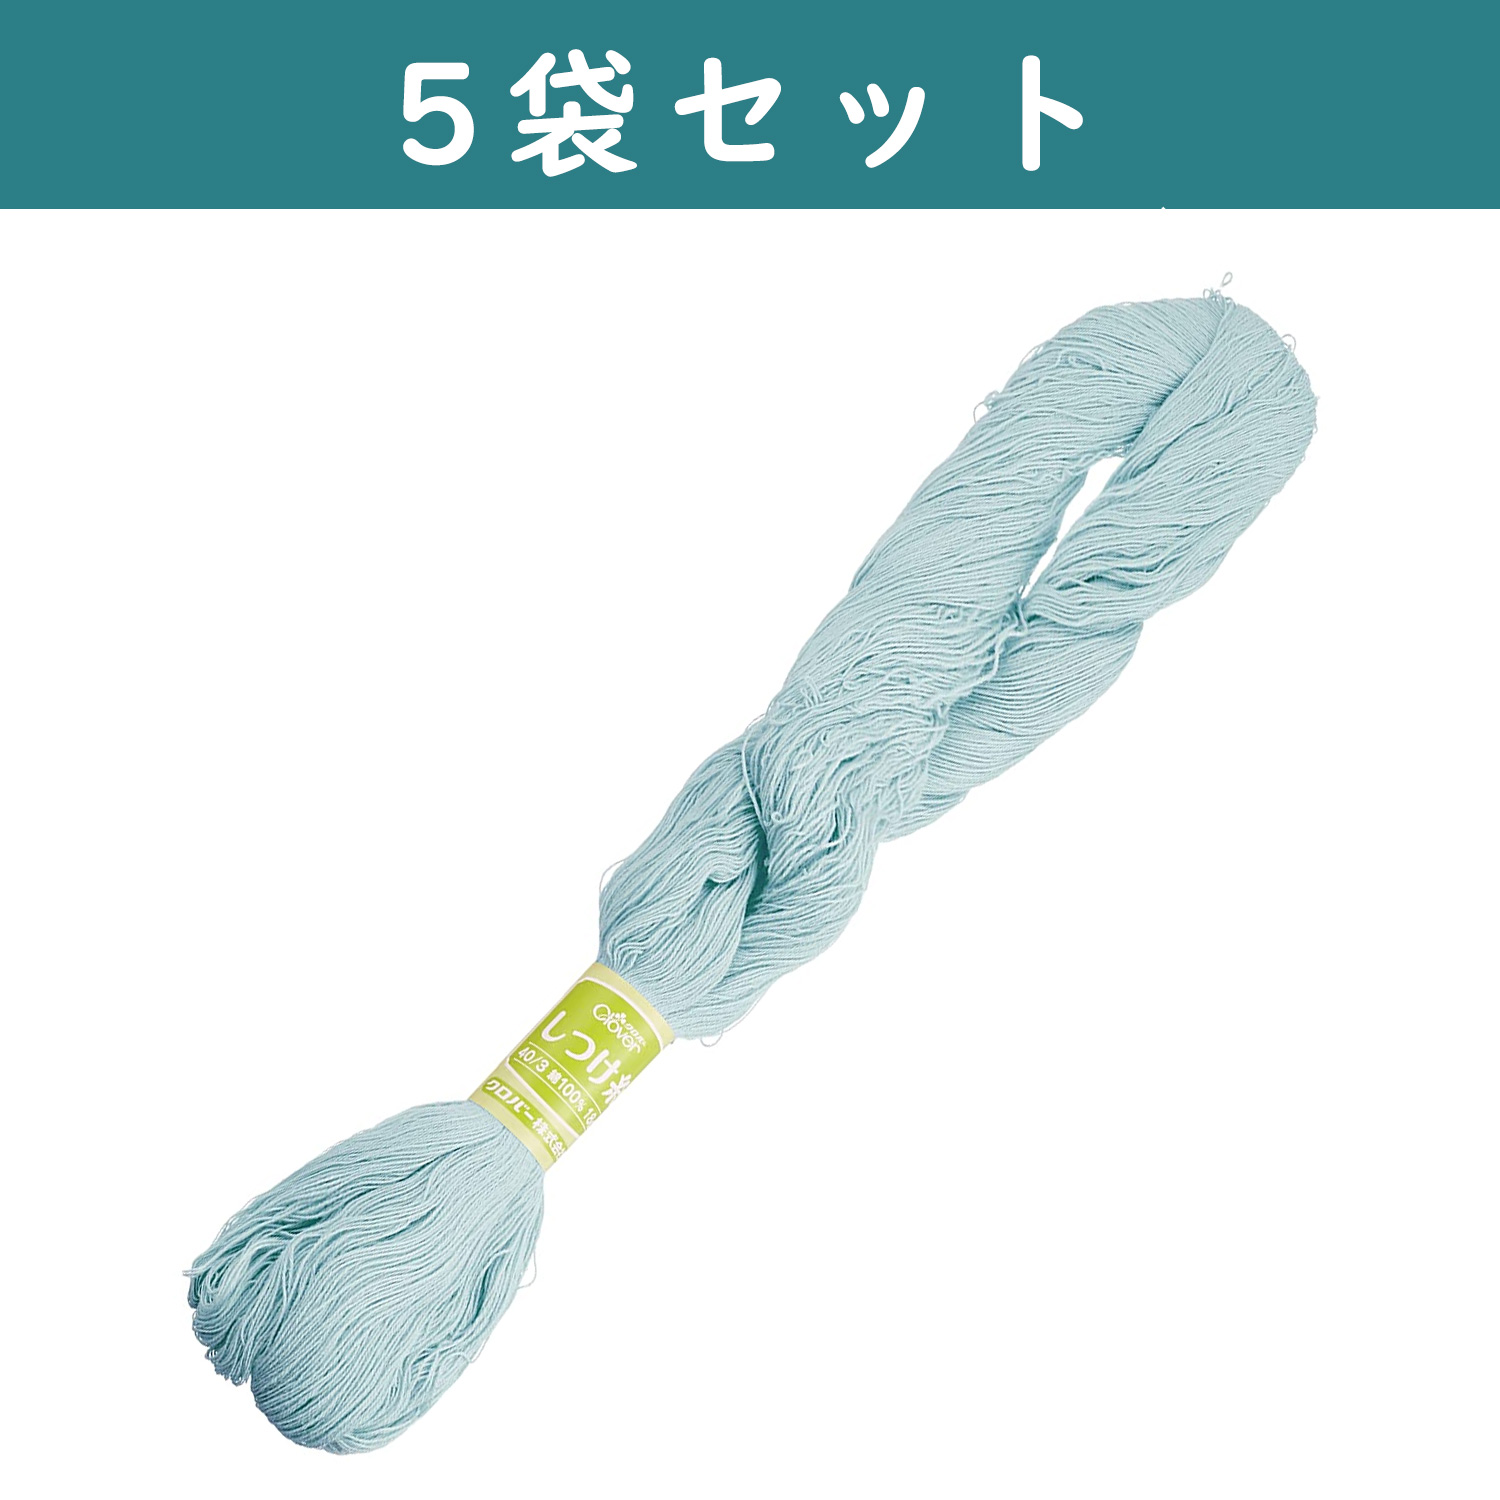 ■【5個】CL26-578-5set しつけ糸 18g 1かせ入り ブルー ×5個 (セット)